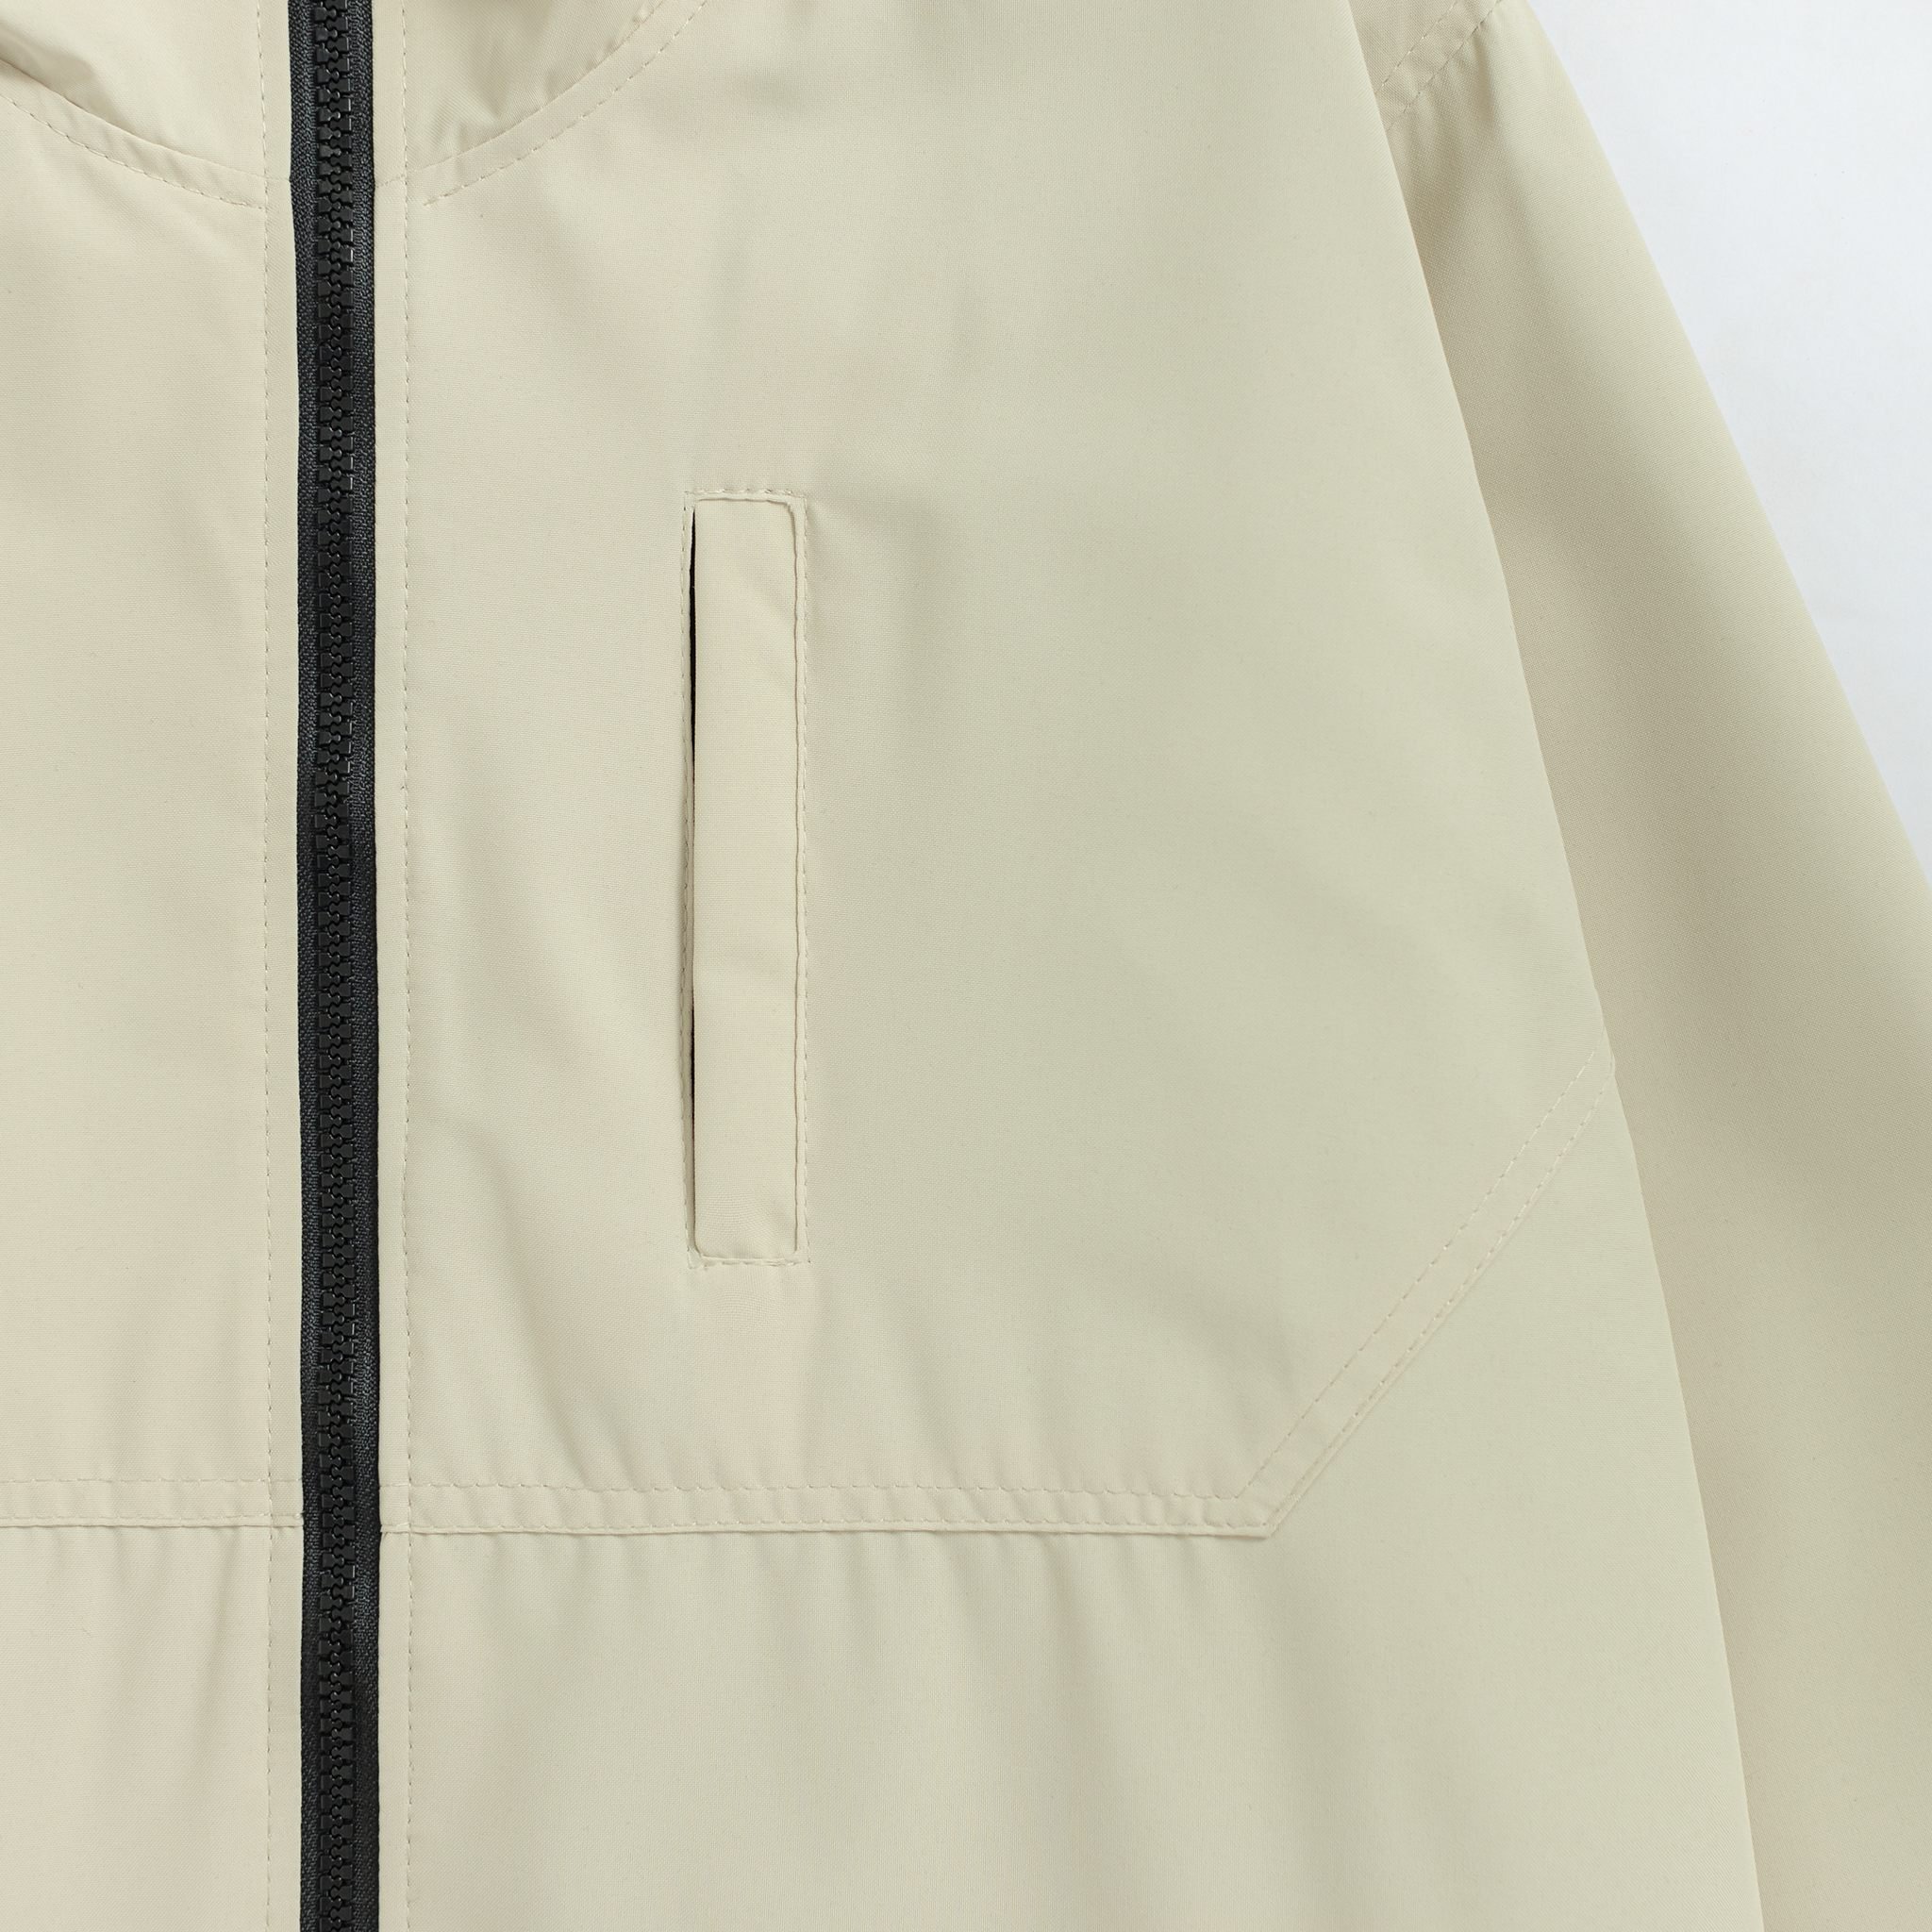 Áo khoác (gió) dù nam 2 lớp cao cấp lai rút có túi trong và nón LADOS-2110 chống tia UV phong cách trẻ trung mạnh mẽ